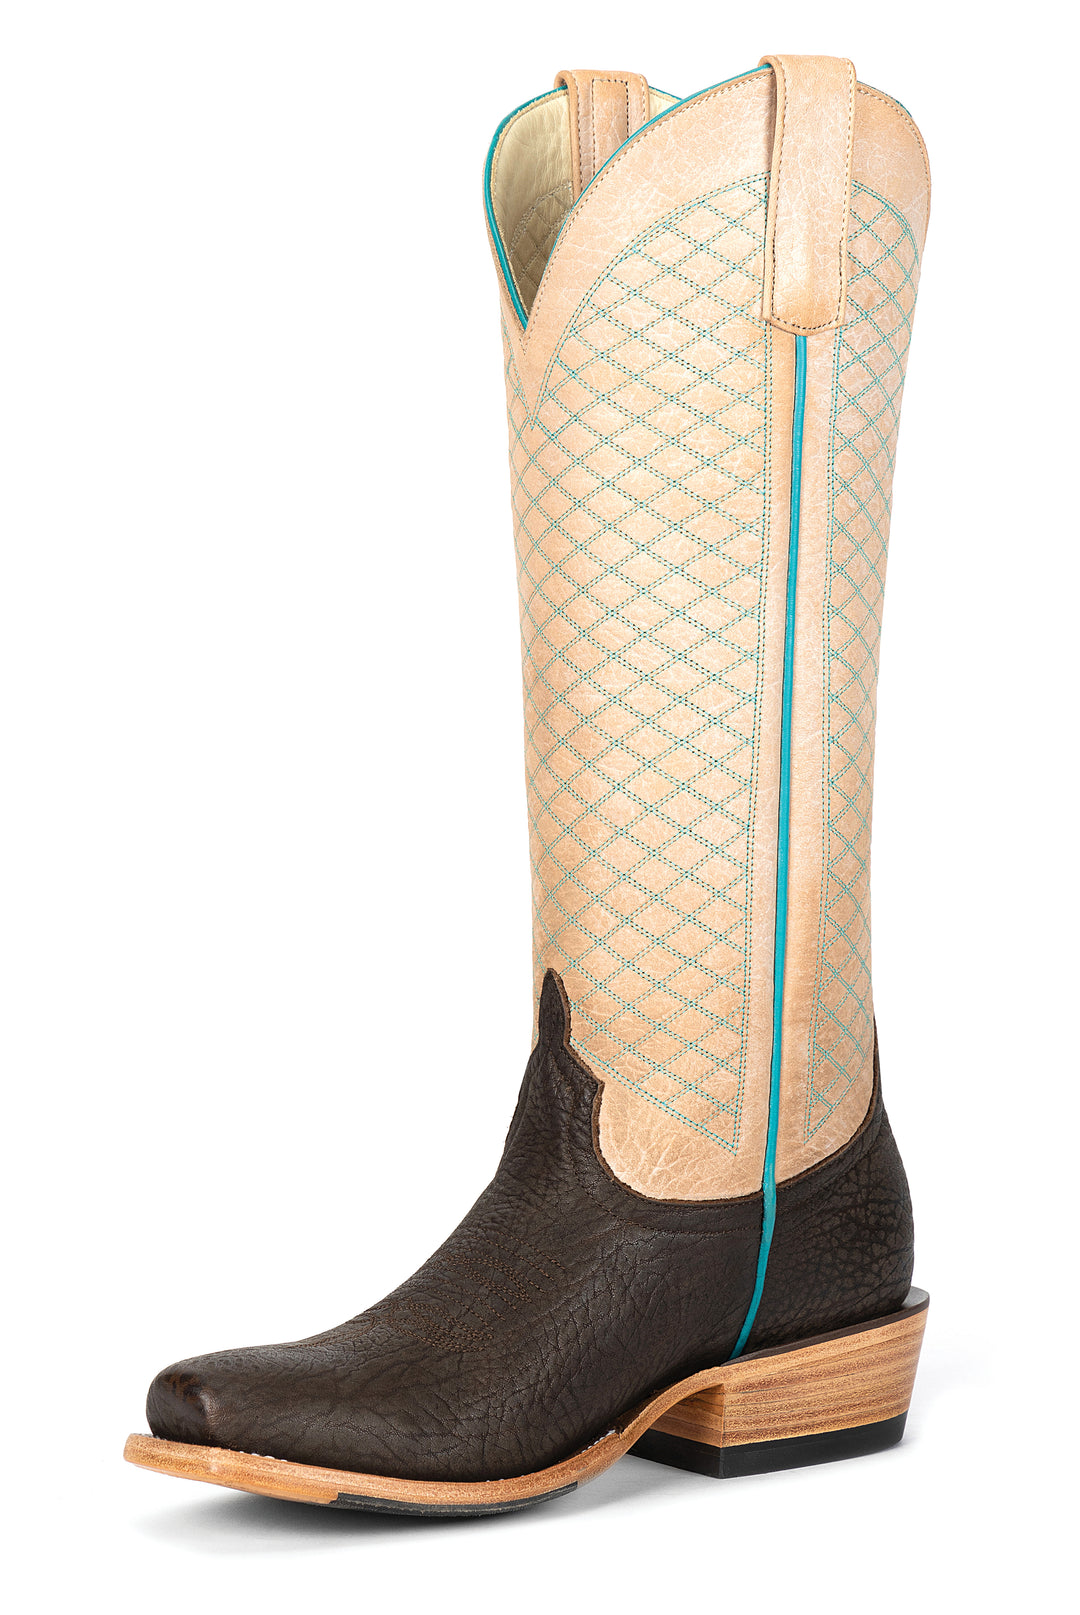 Macie Bean Top Hand |  Grey Rodeo Shrunken Shoulder Ladies Boot